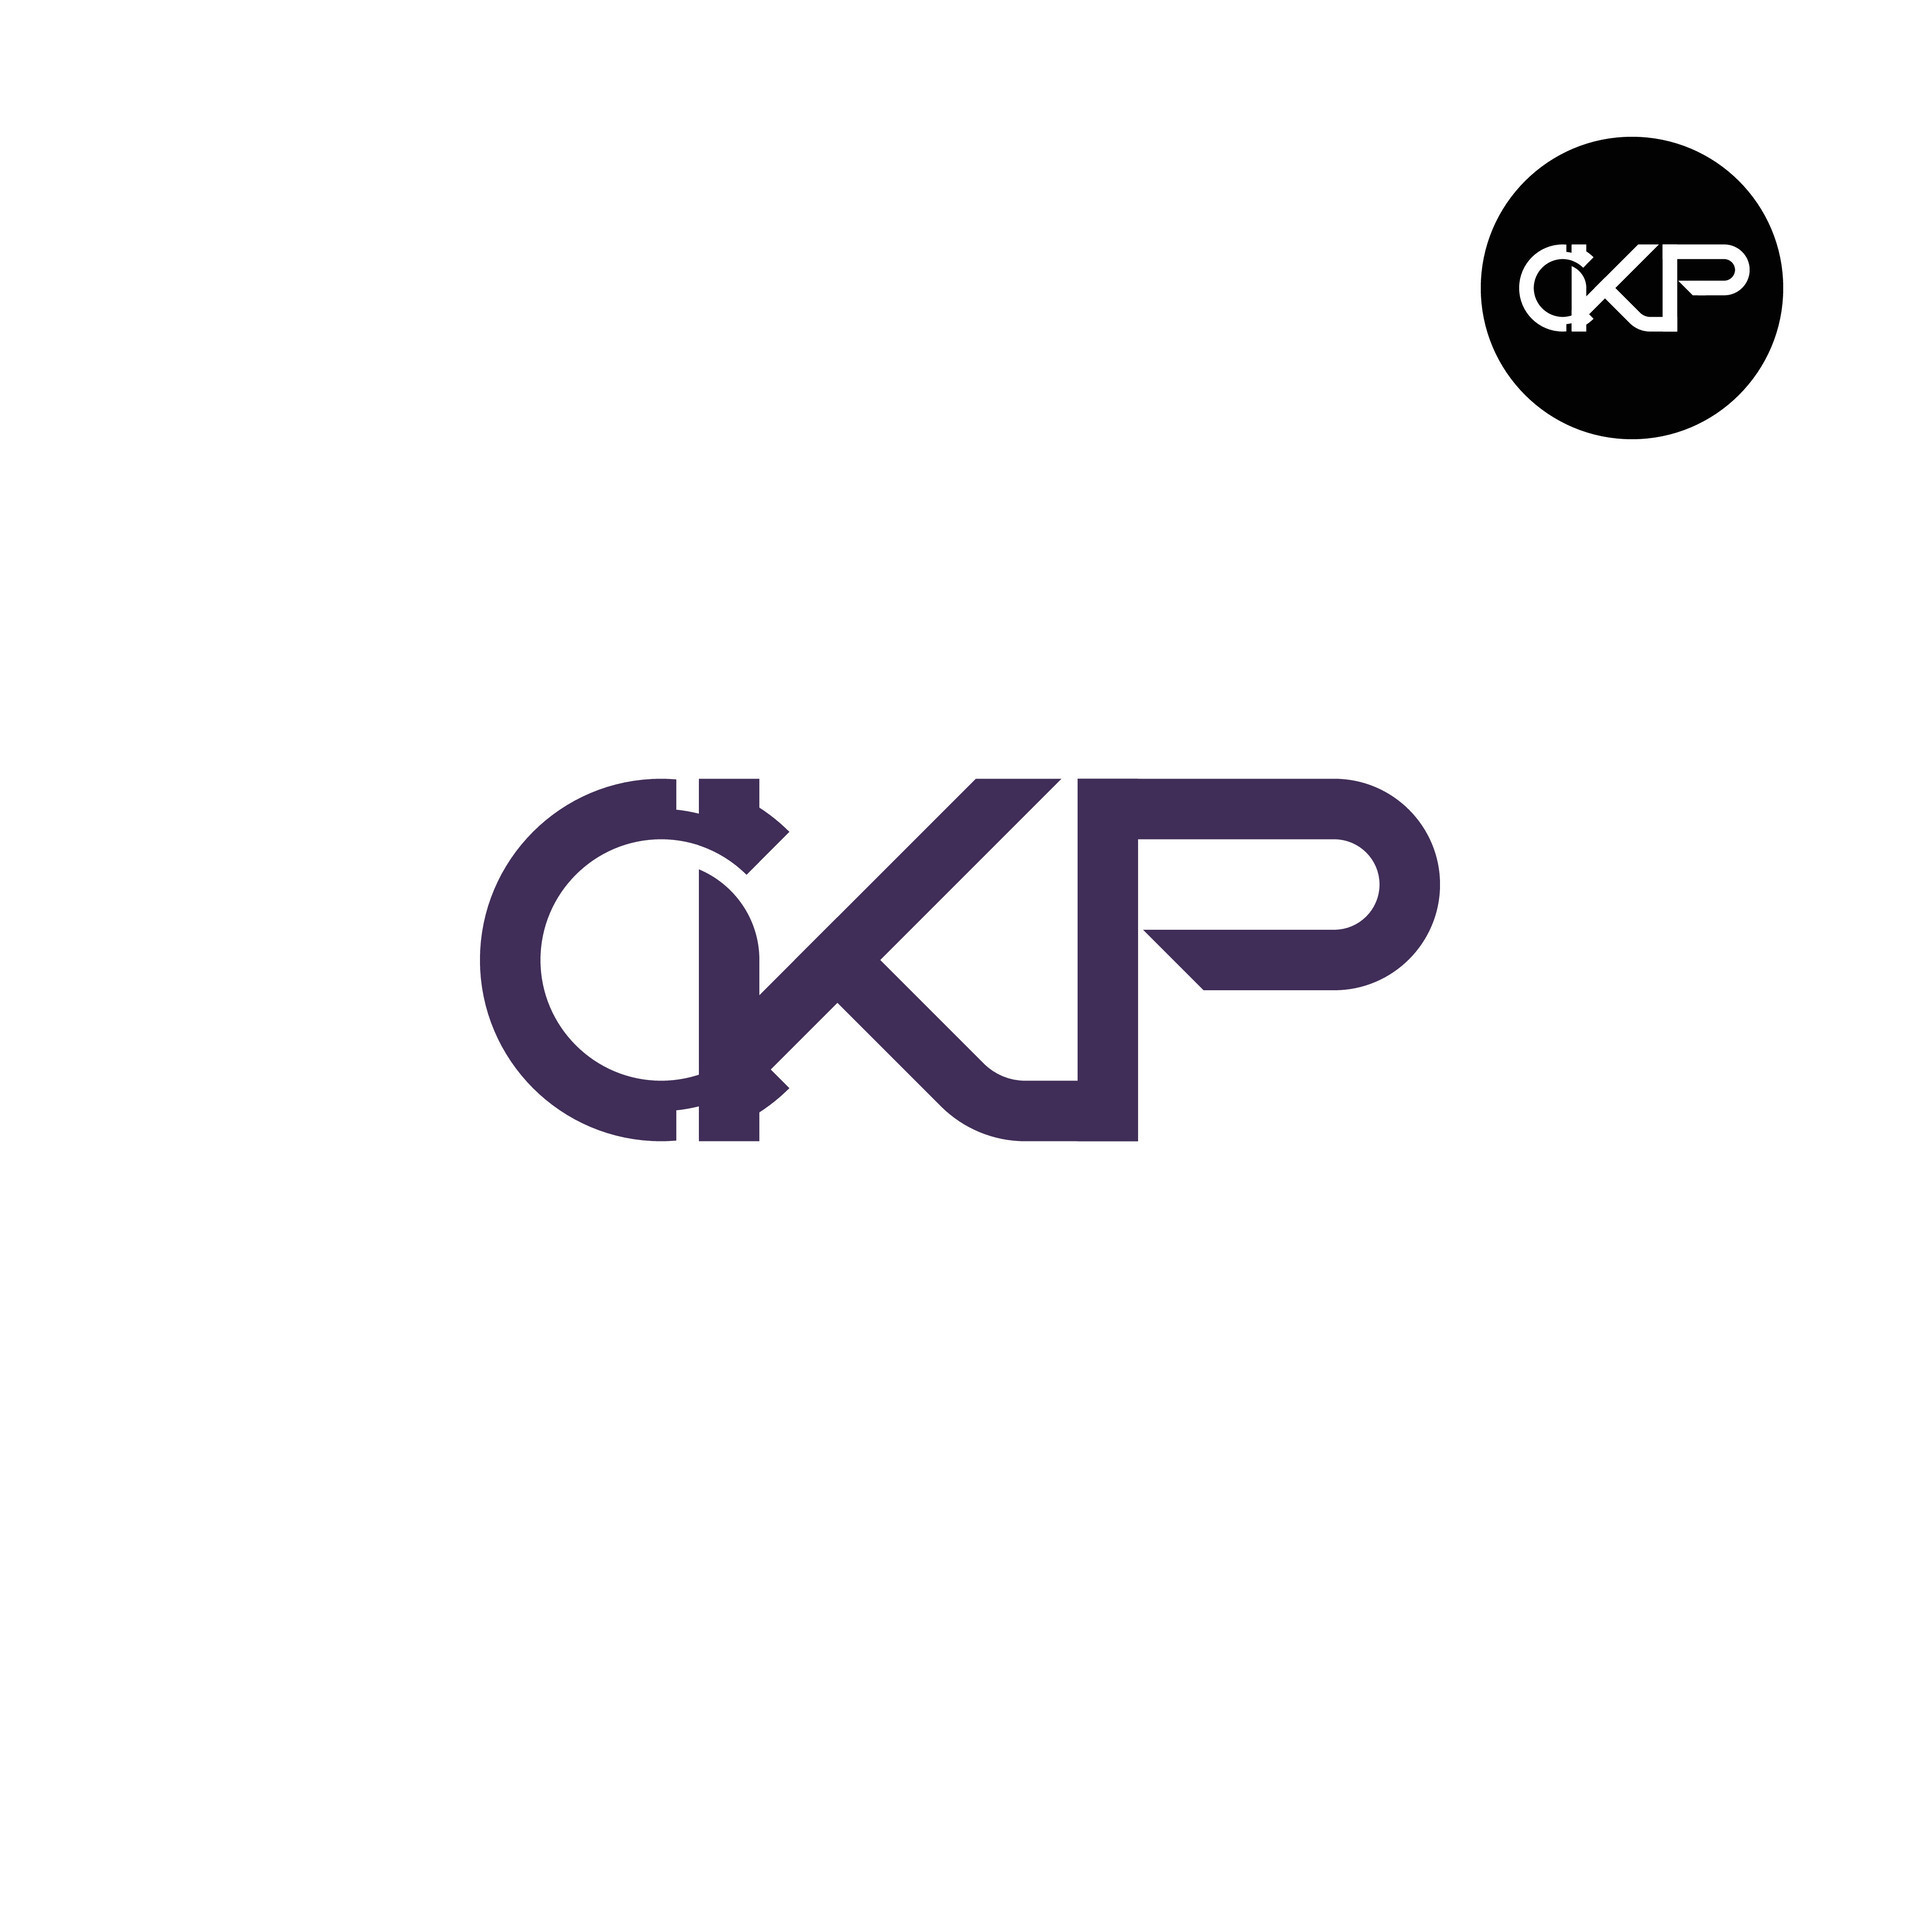 Letter CKP Monogram Logo Design 27926835 Vector Art at Vecteezy